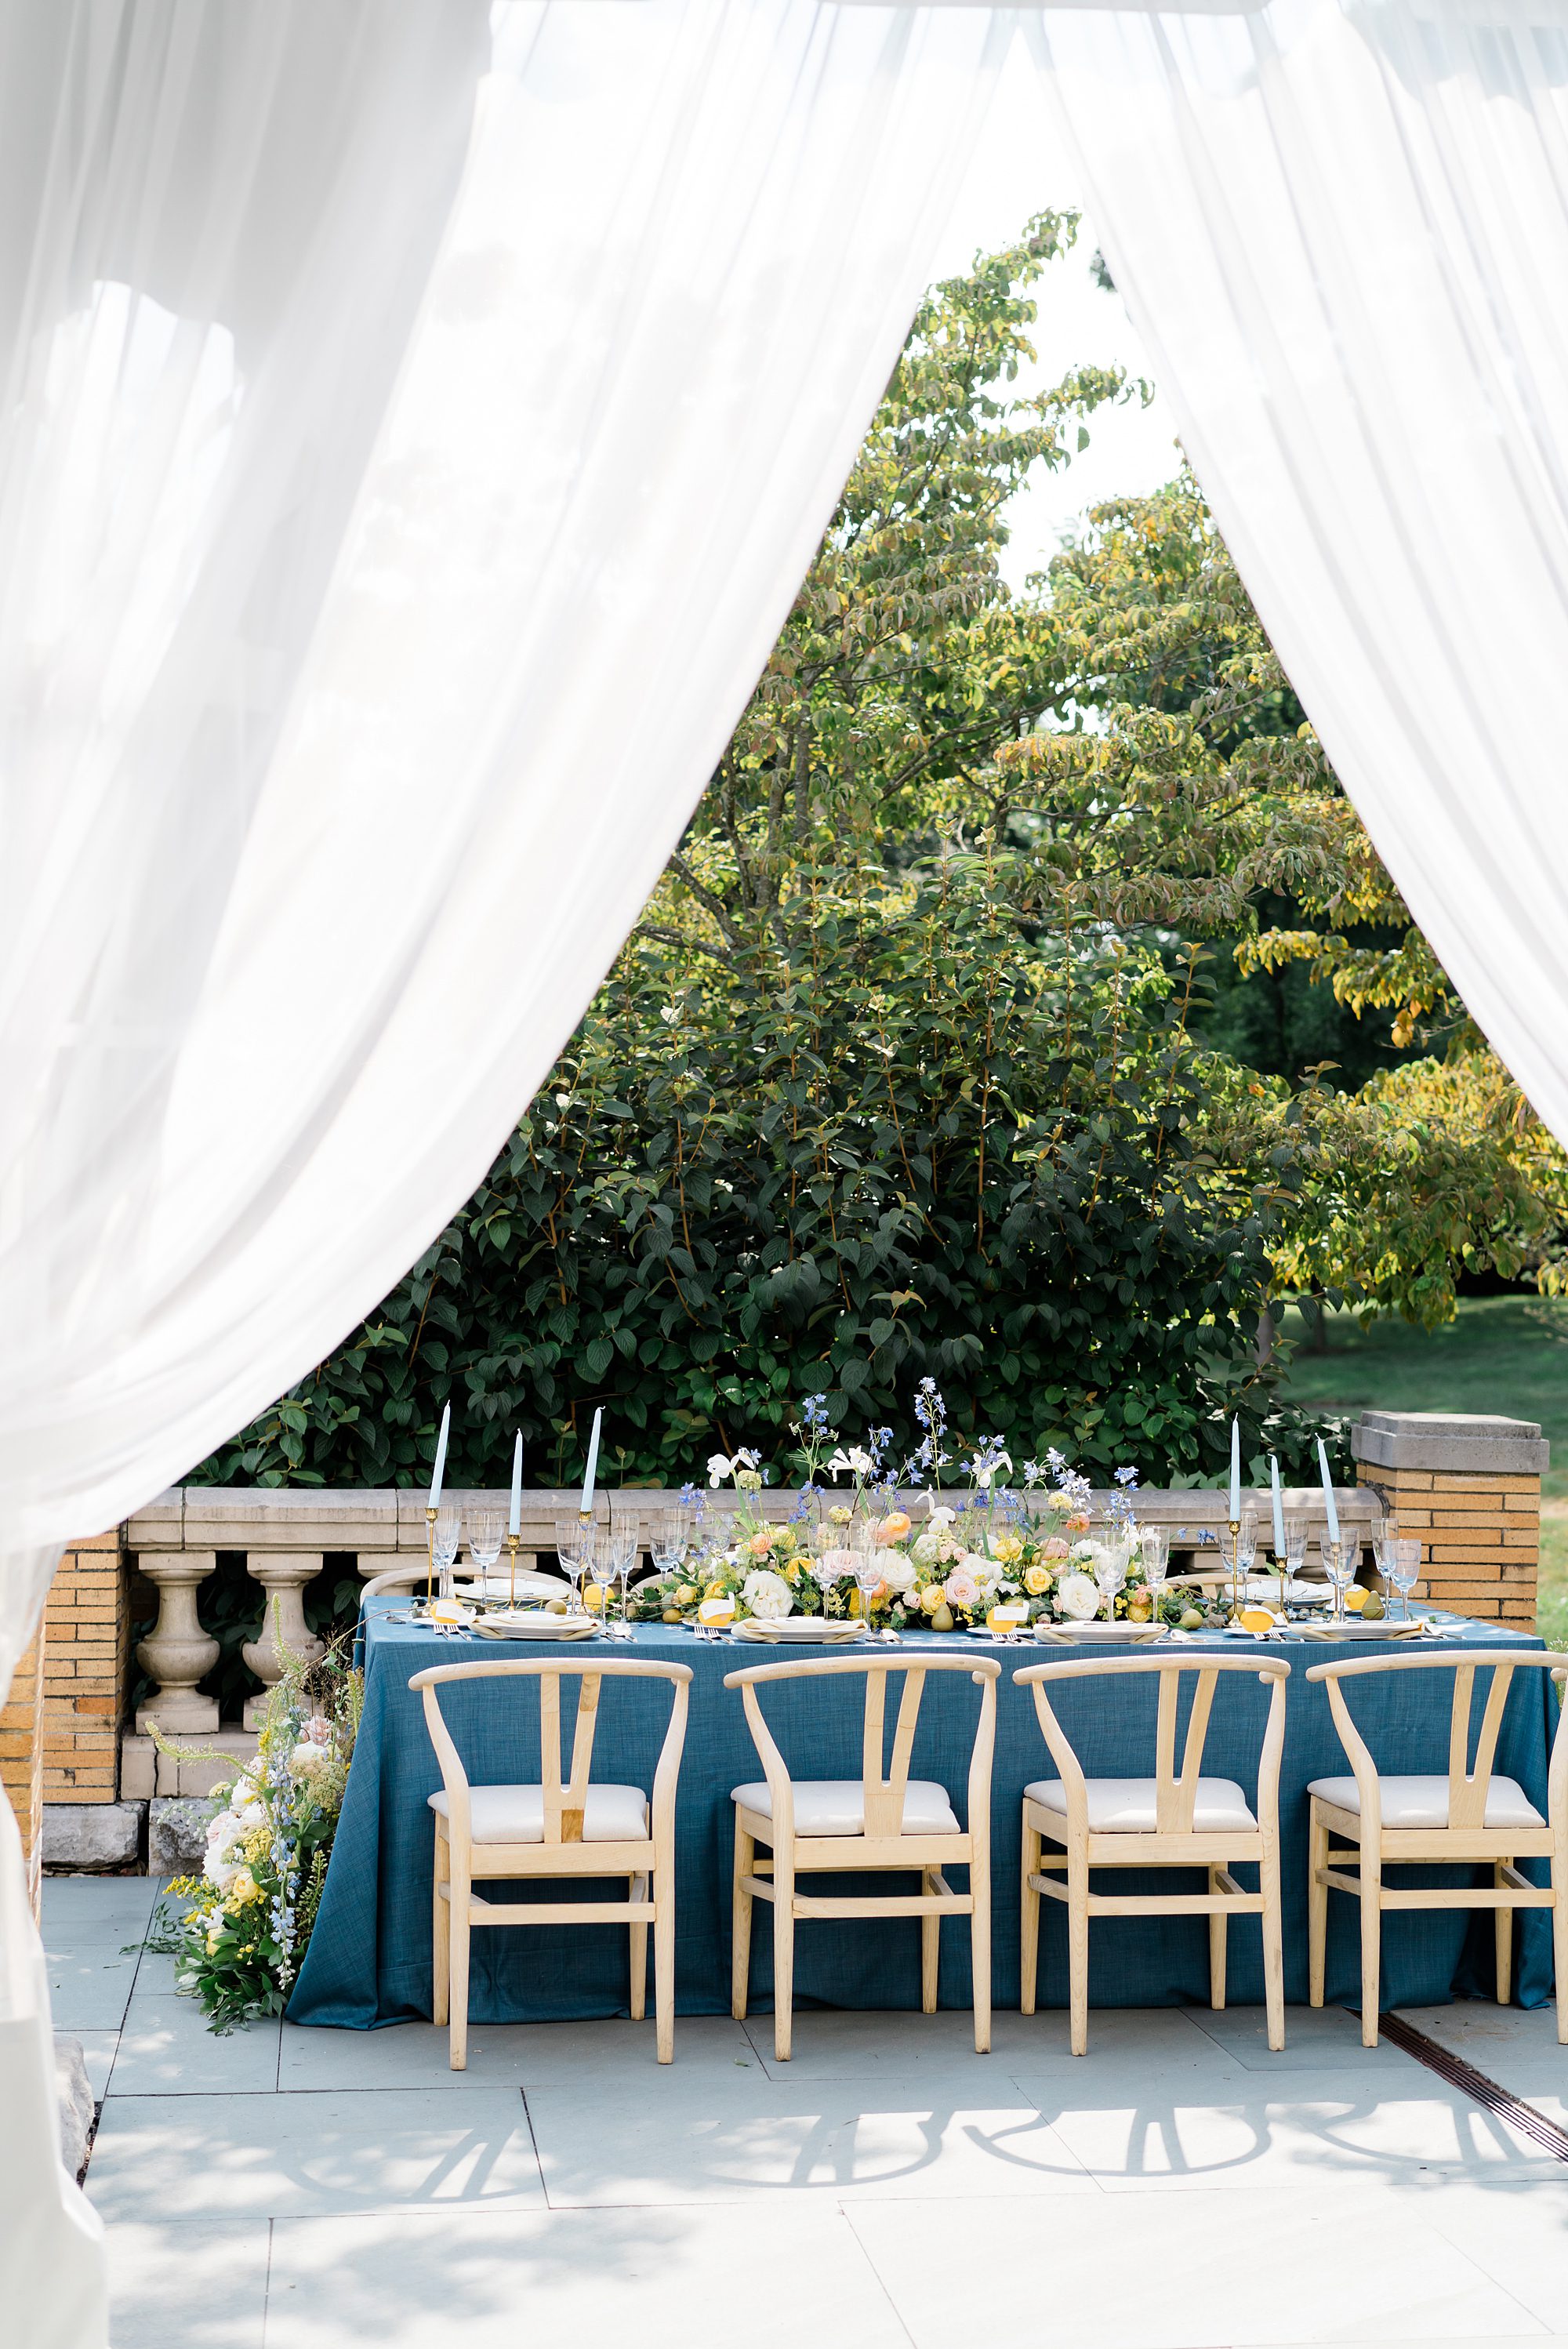 Wedding tables set up in garden of Cairnwood estate